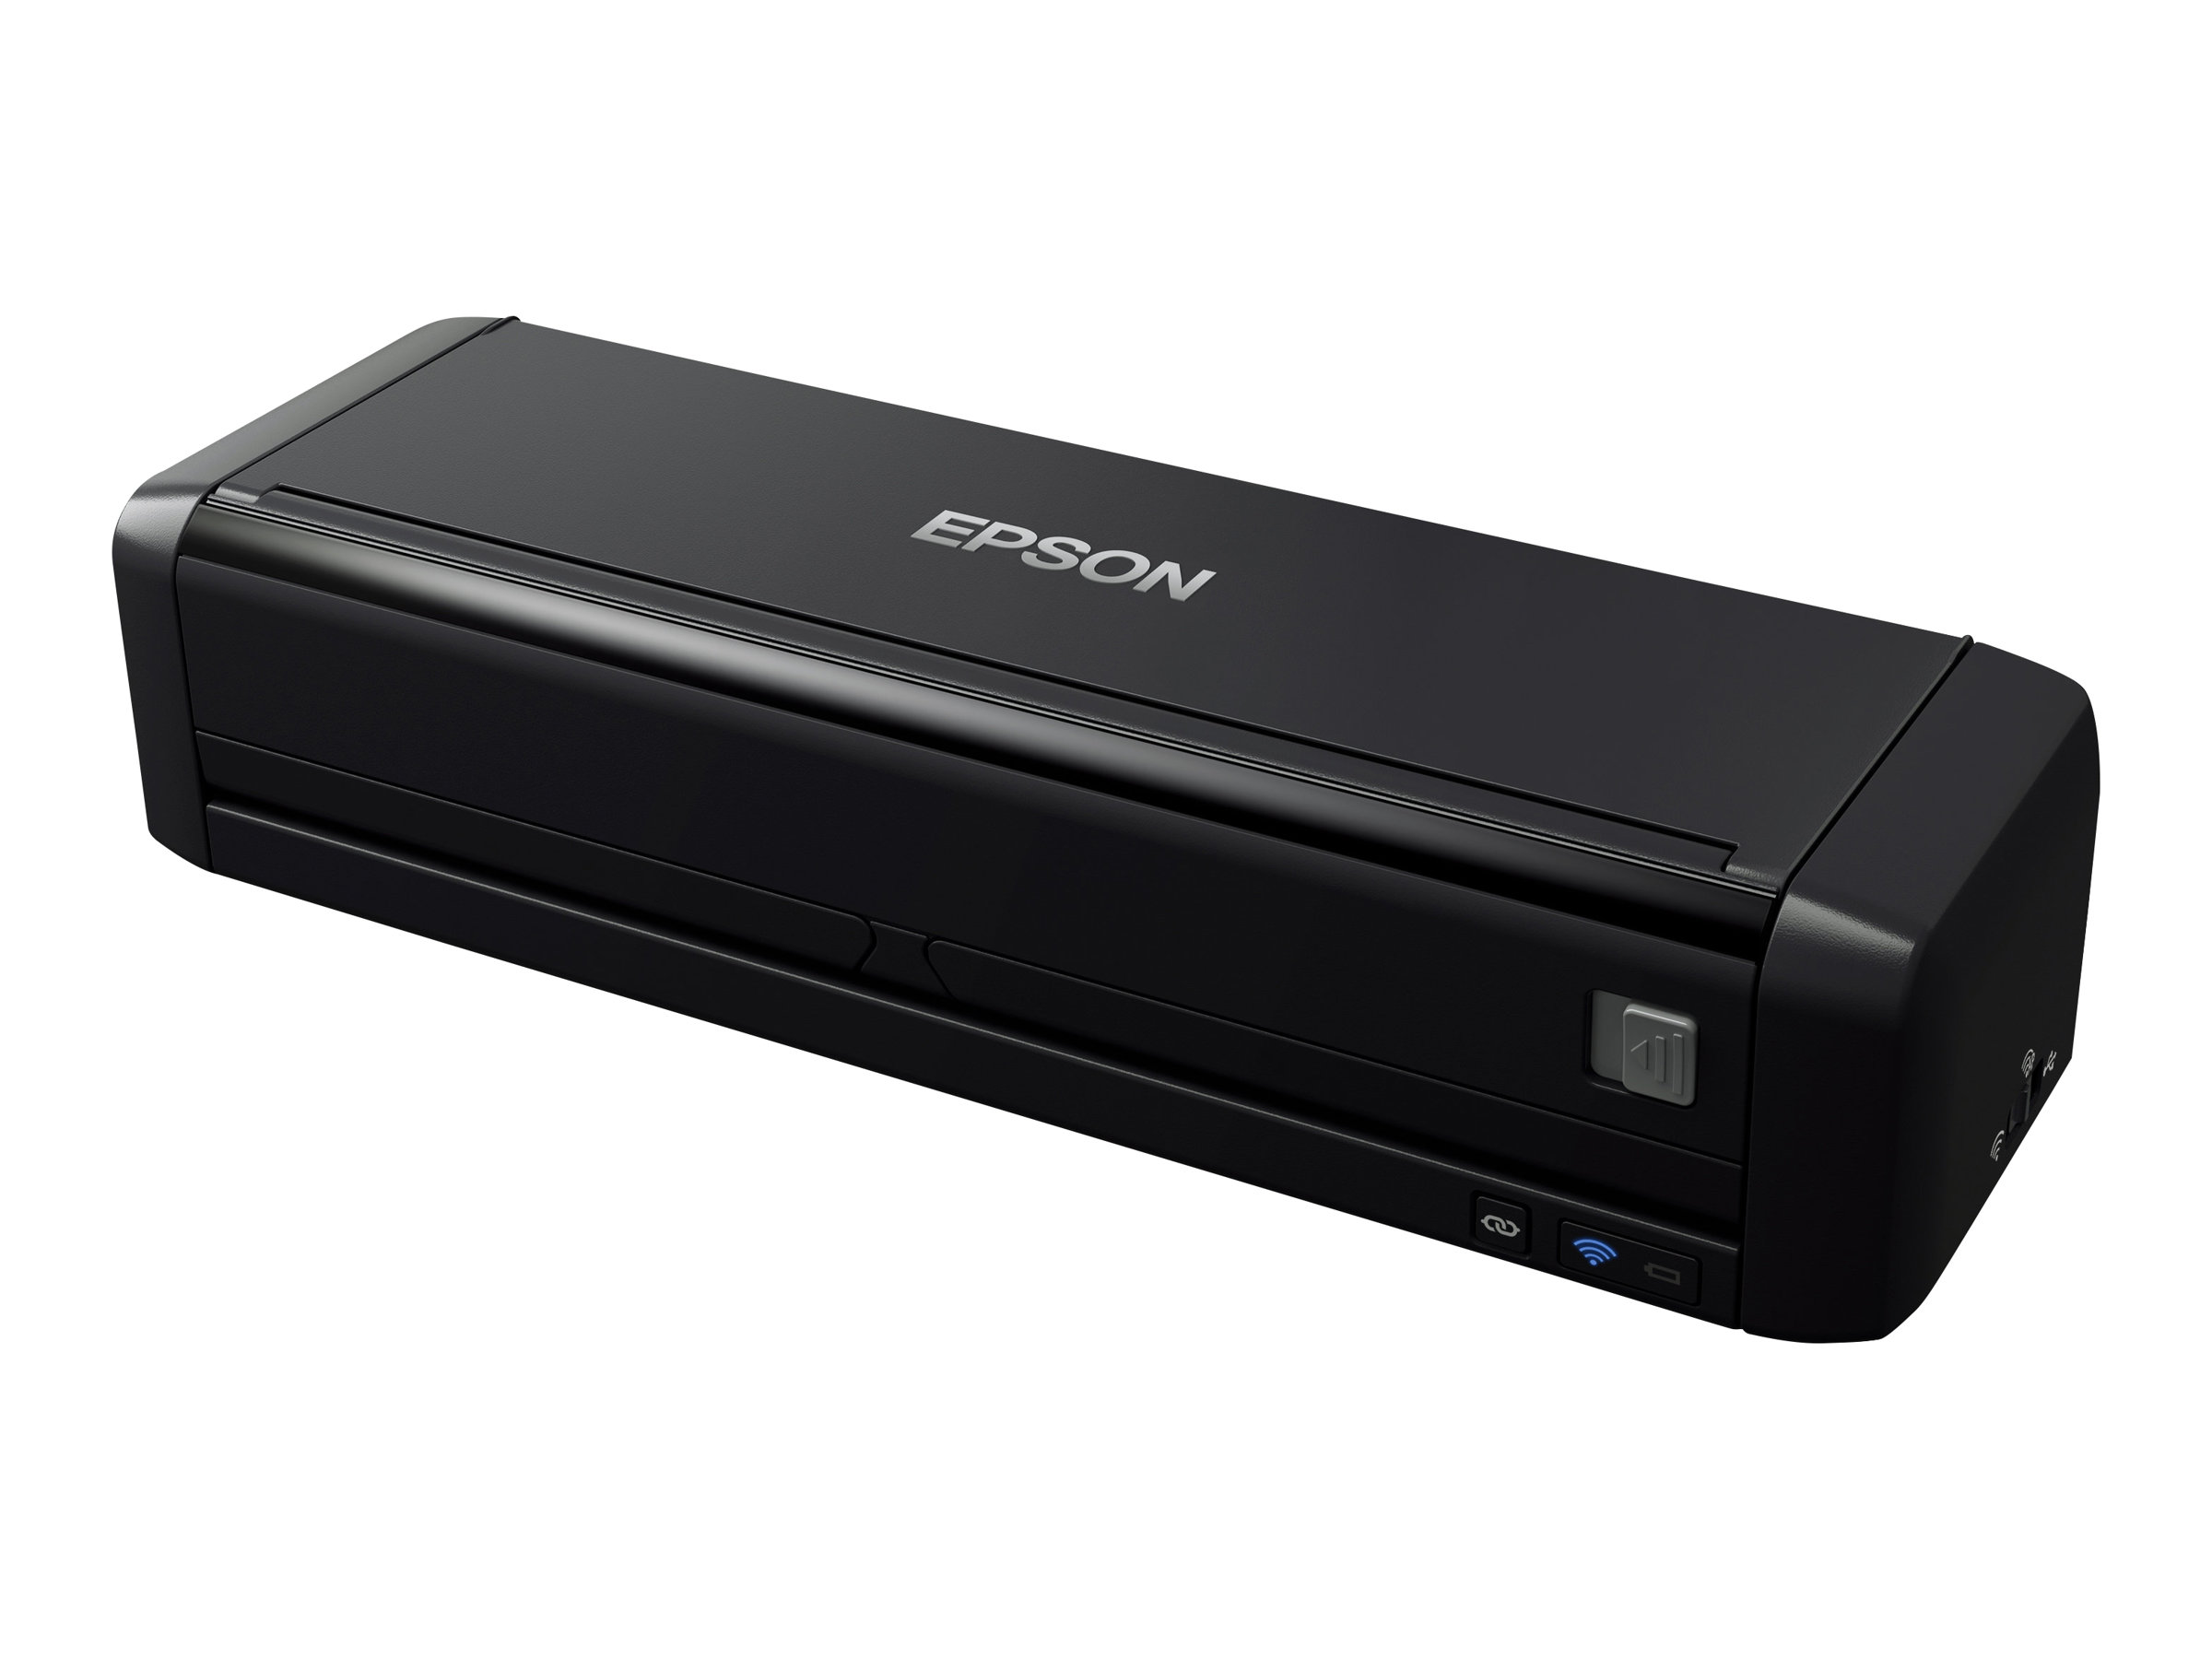 Epson WorkForce DS-360W - Dokumentenscanner - Duplex - A4 - 600 dpi x 600 dpi - bis zu 25 Seiten/Min. (einfarbig)